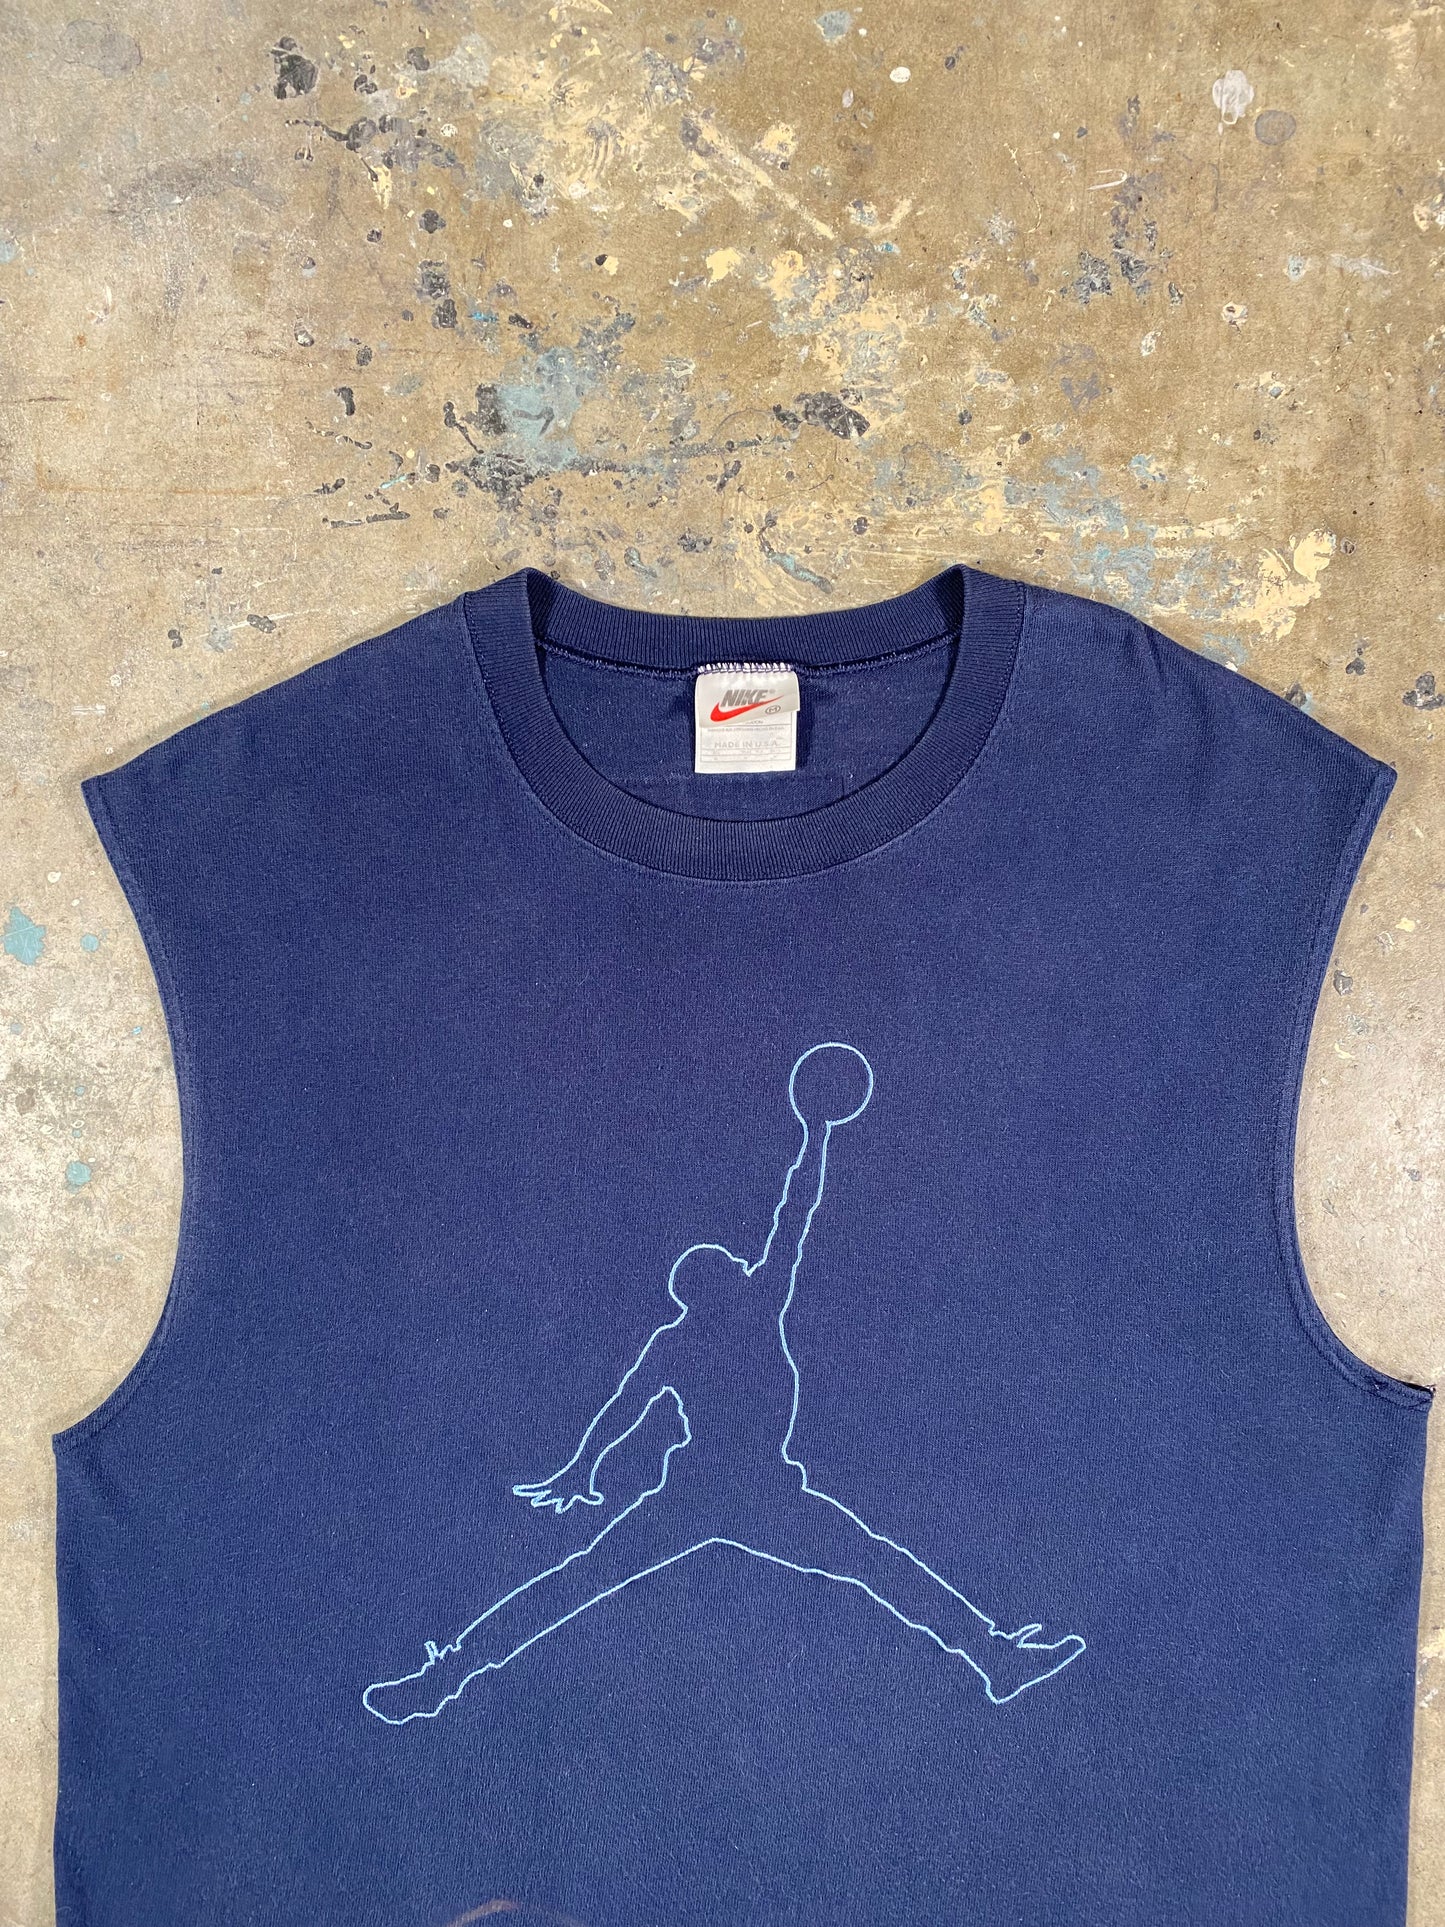 Nike Embroidered Basketball Tee (M)